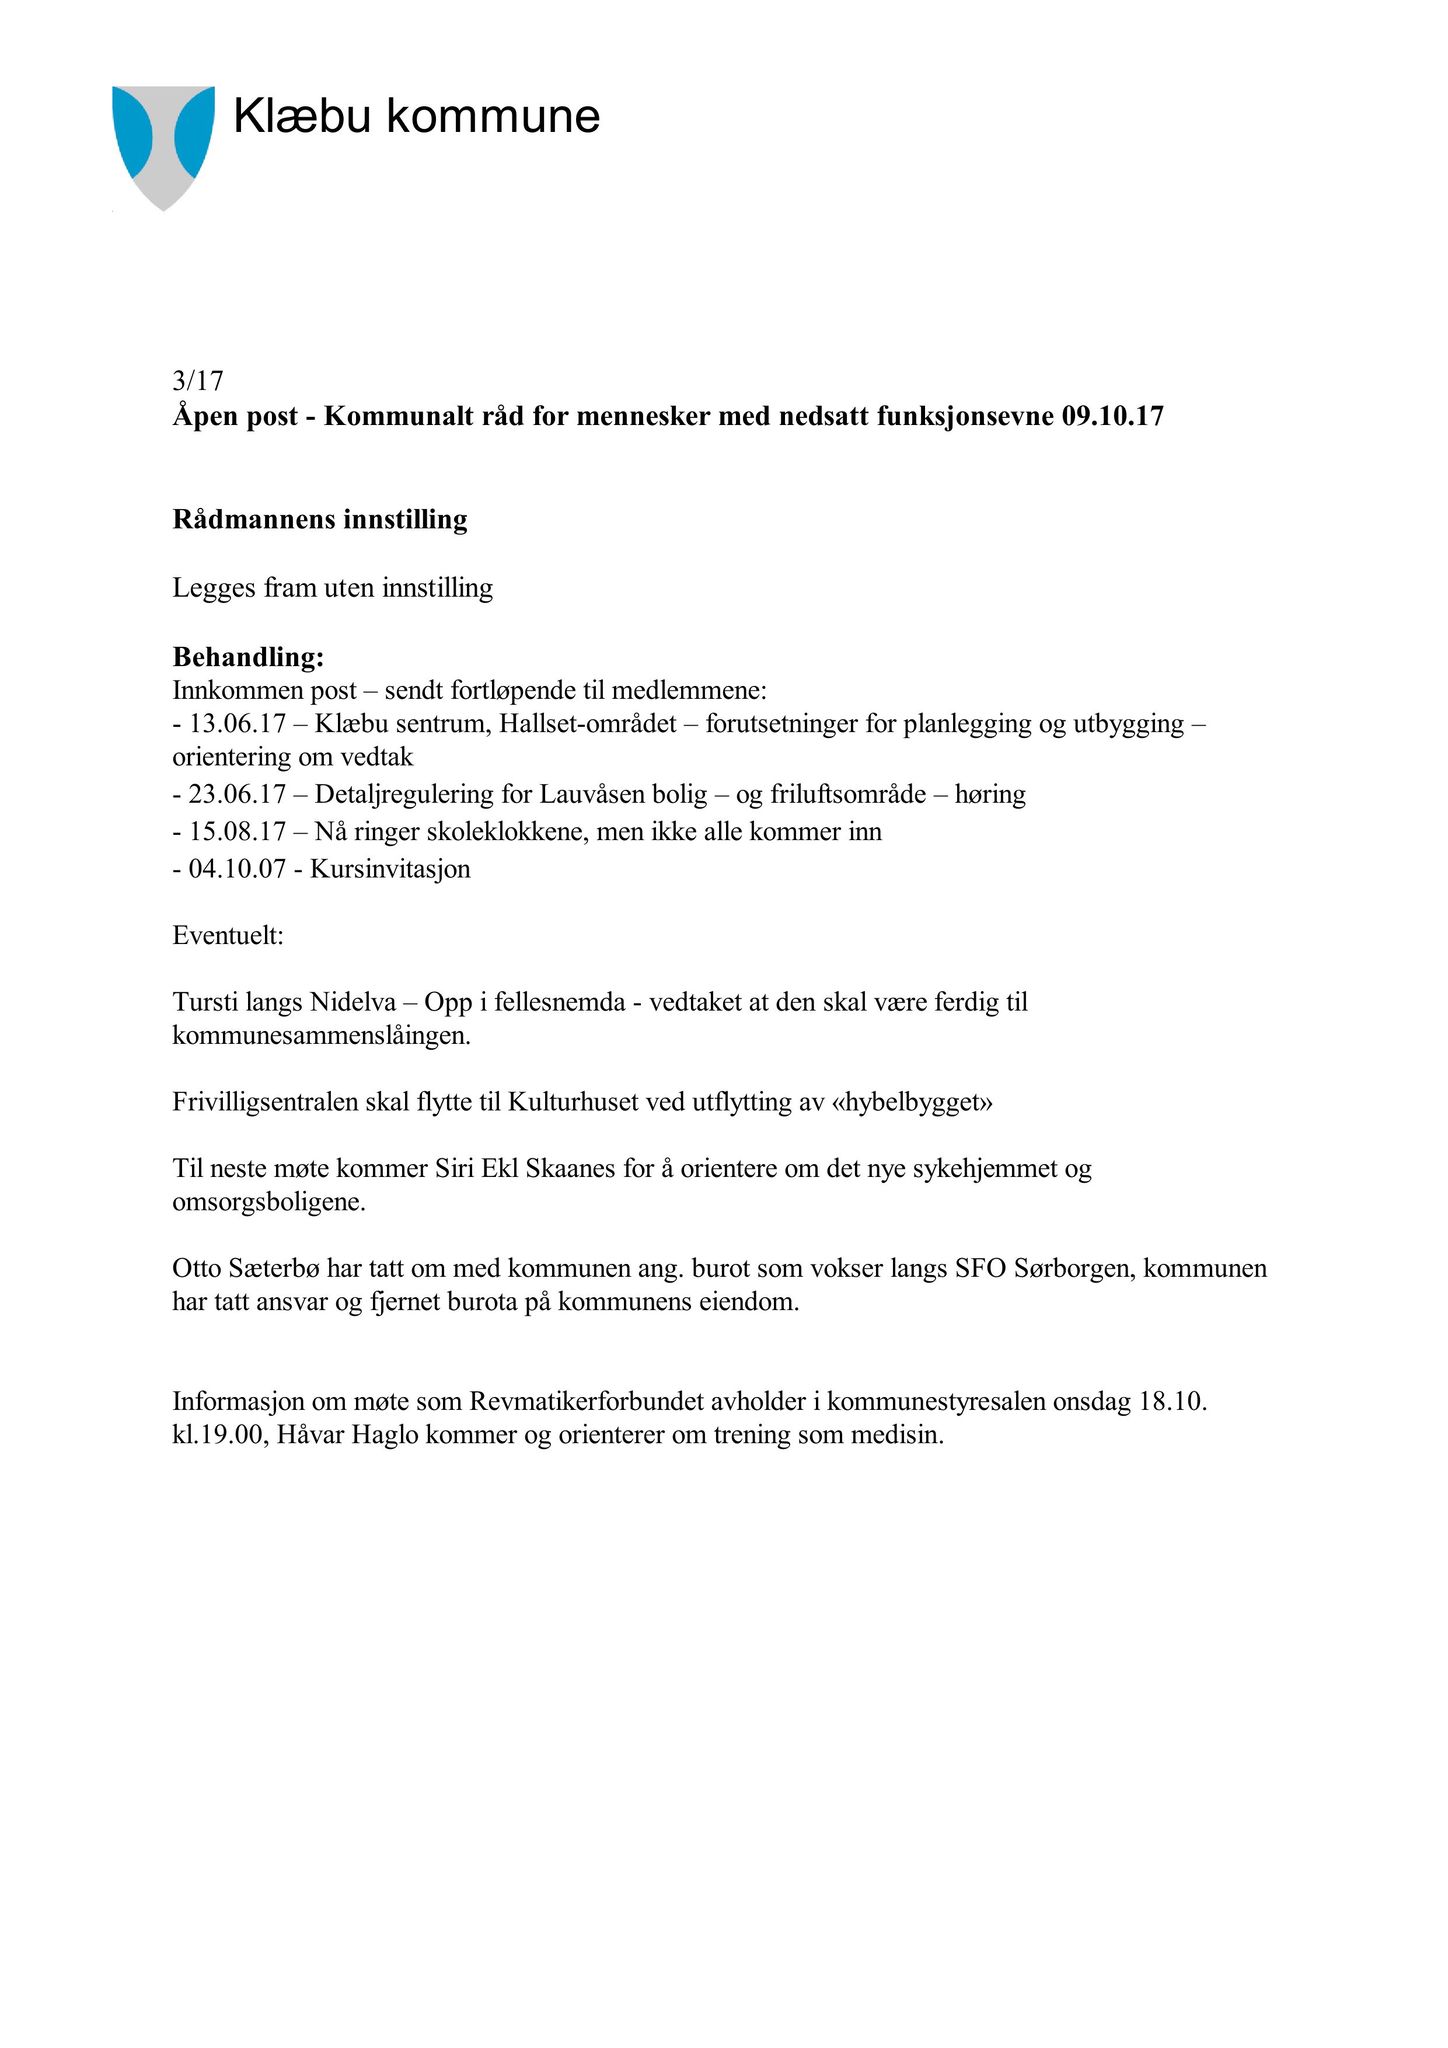 Klæbu Kommune, TRKO/KK/08-KMNF/L007: Kommunalt råd for mennesker med nedsatt funksjonsevne - Møteoversikt, 2017, p. 18